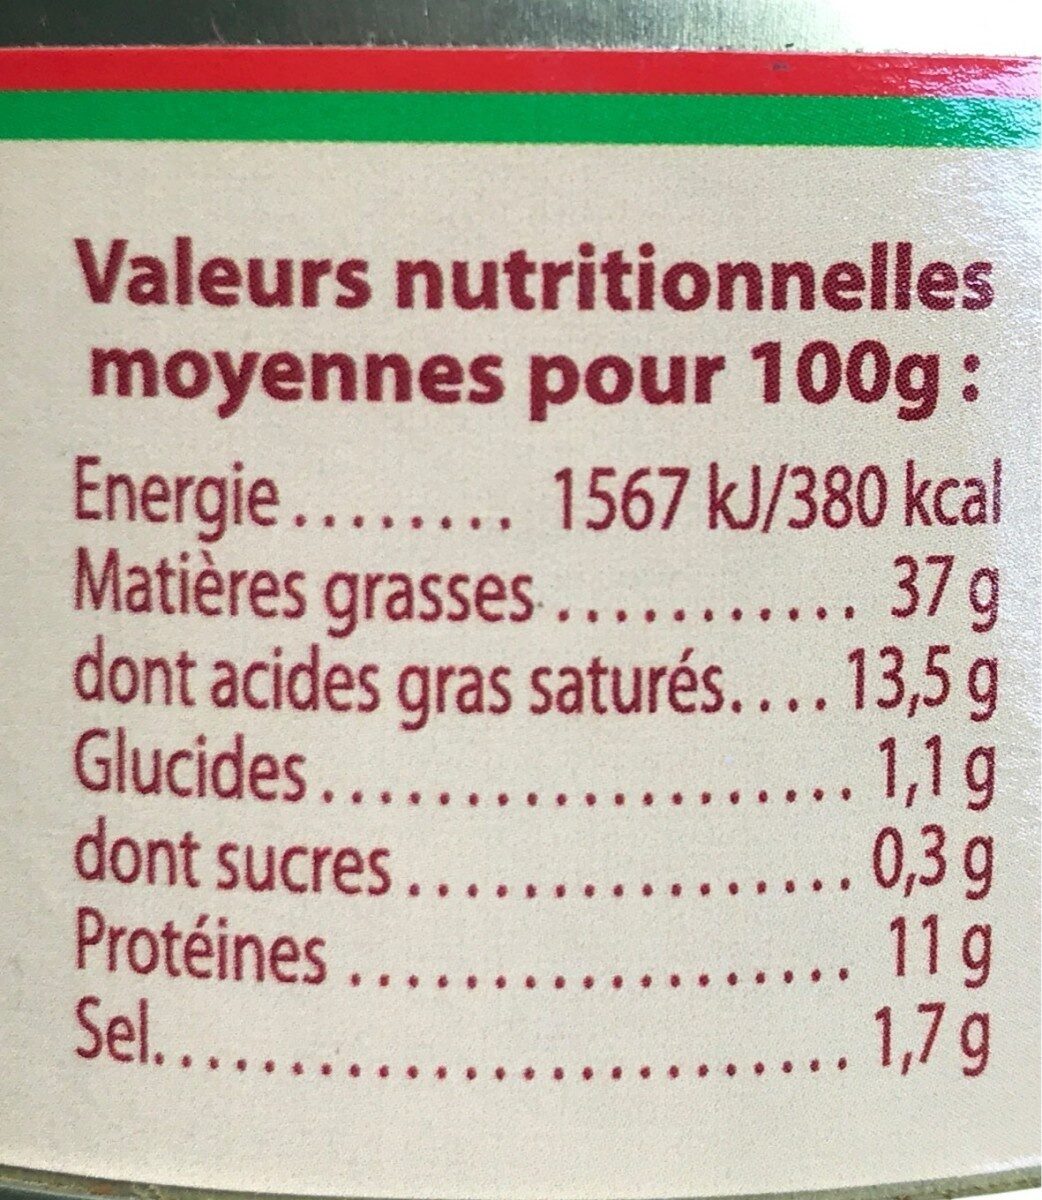 Paté au piment d'Espelette - Nutrition facts - fr